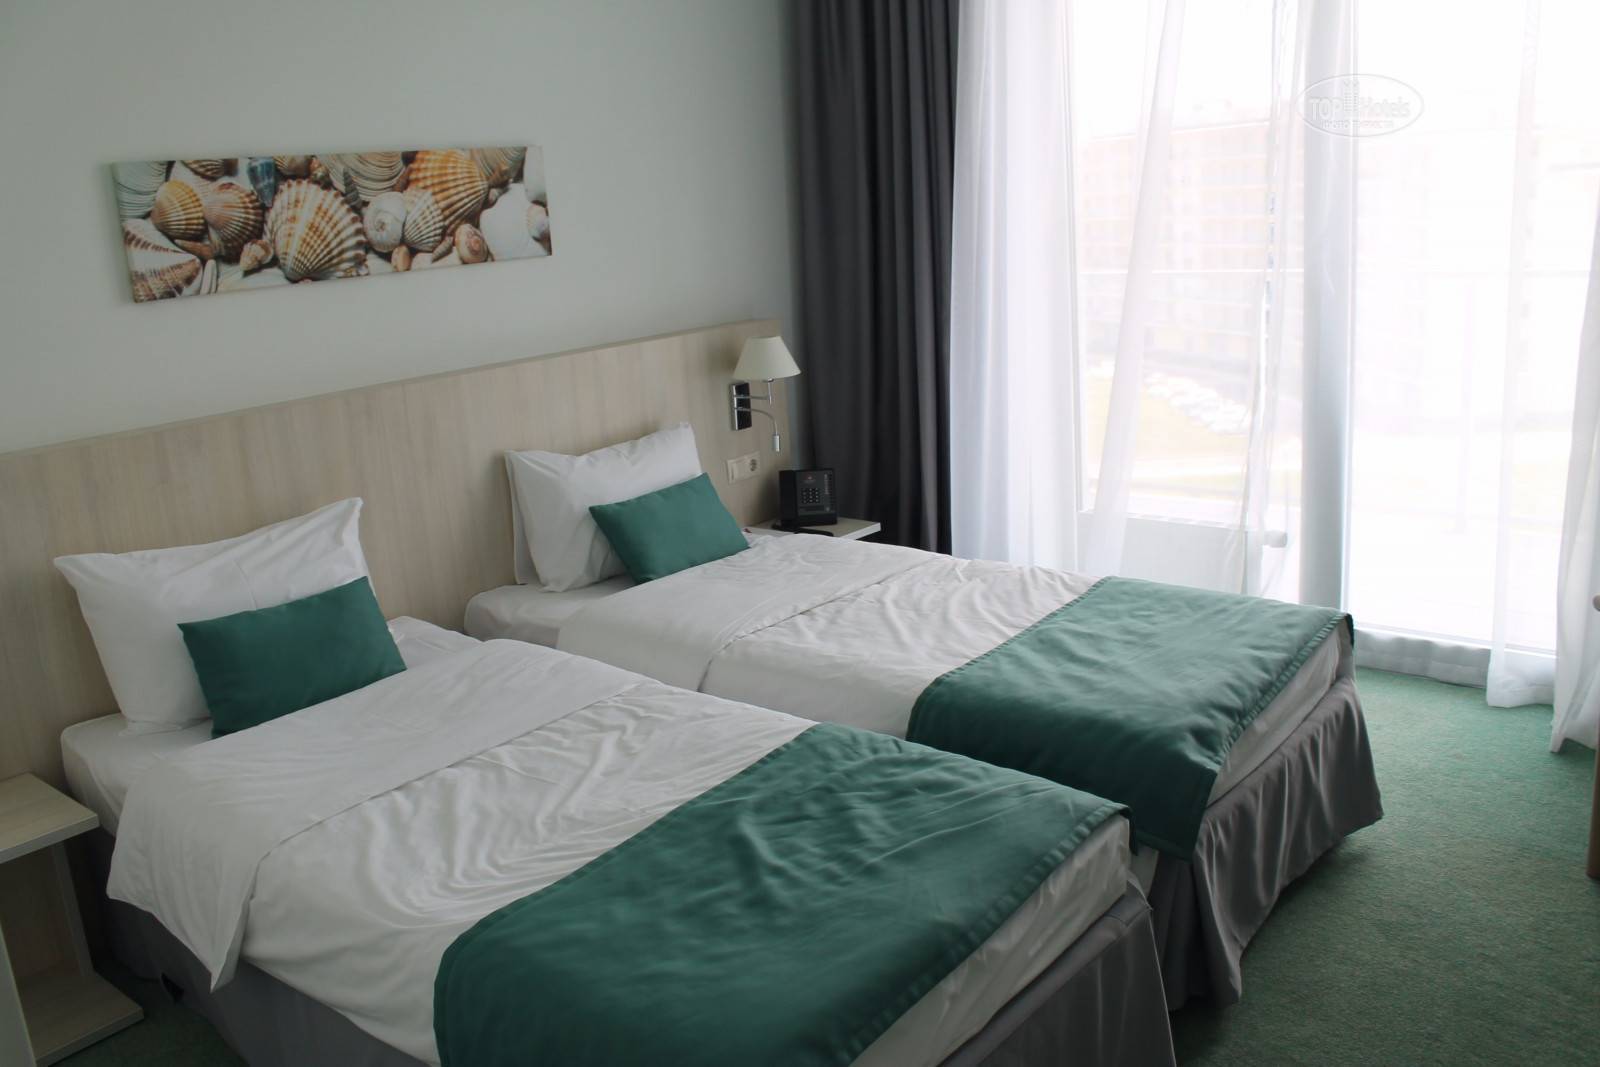 Какие отели в оаэ? особенности отелей в эмиратах - чем отличаются 5, 4 и 3 звездные отели в оаэ?